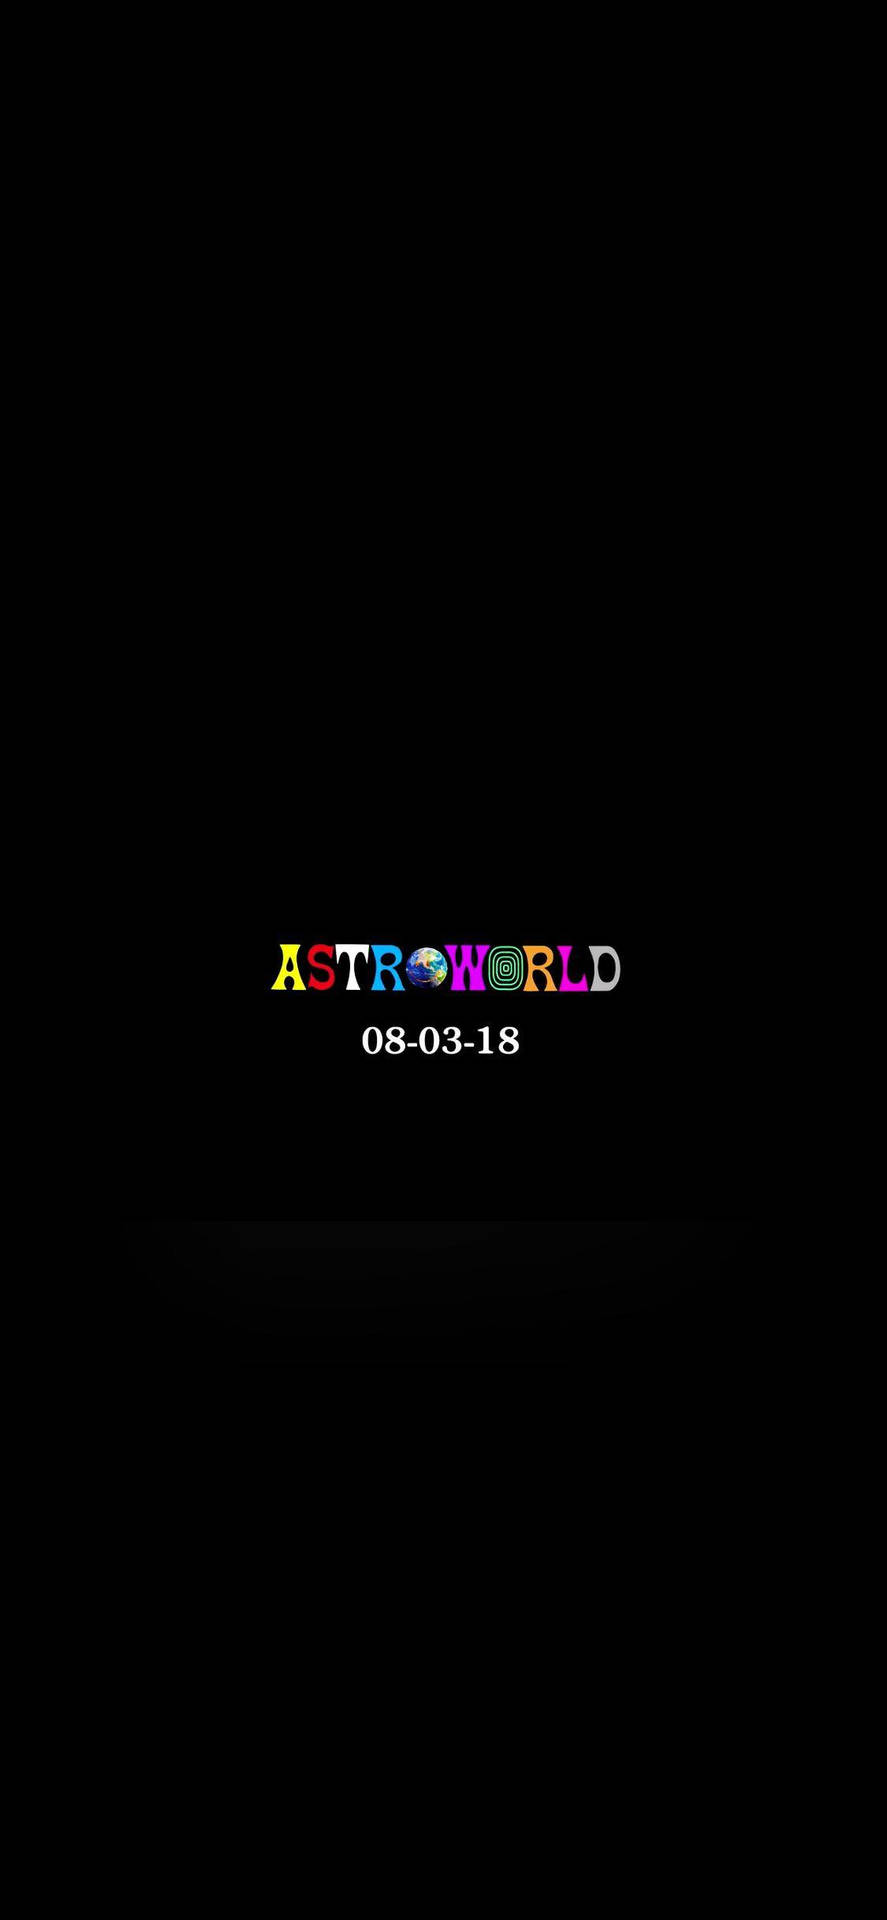 Travis Scott Astroworld Koncert Dato Baggrund Wallpaper